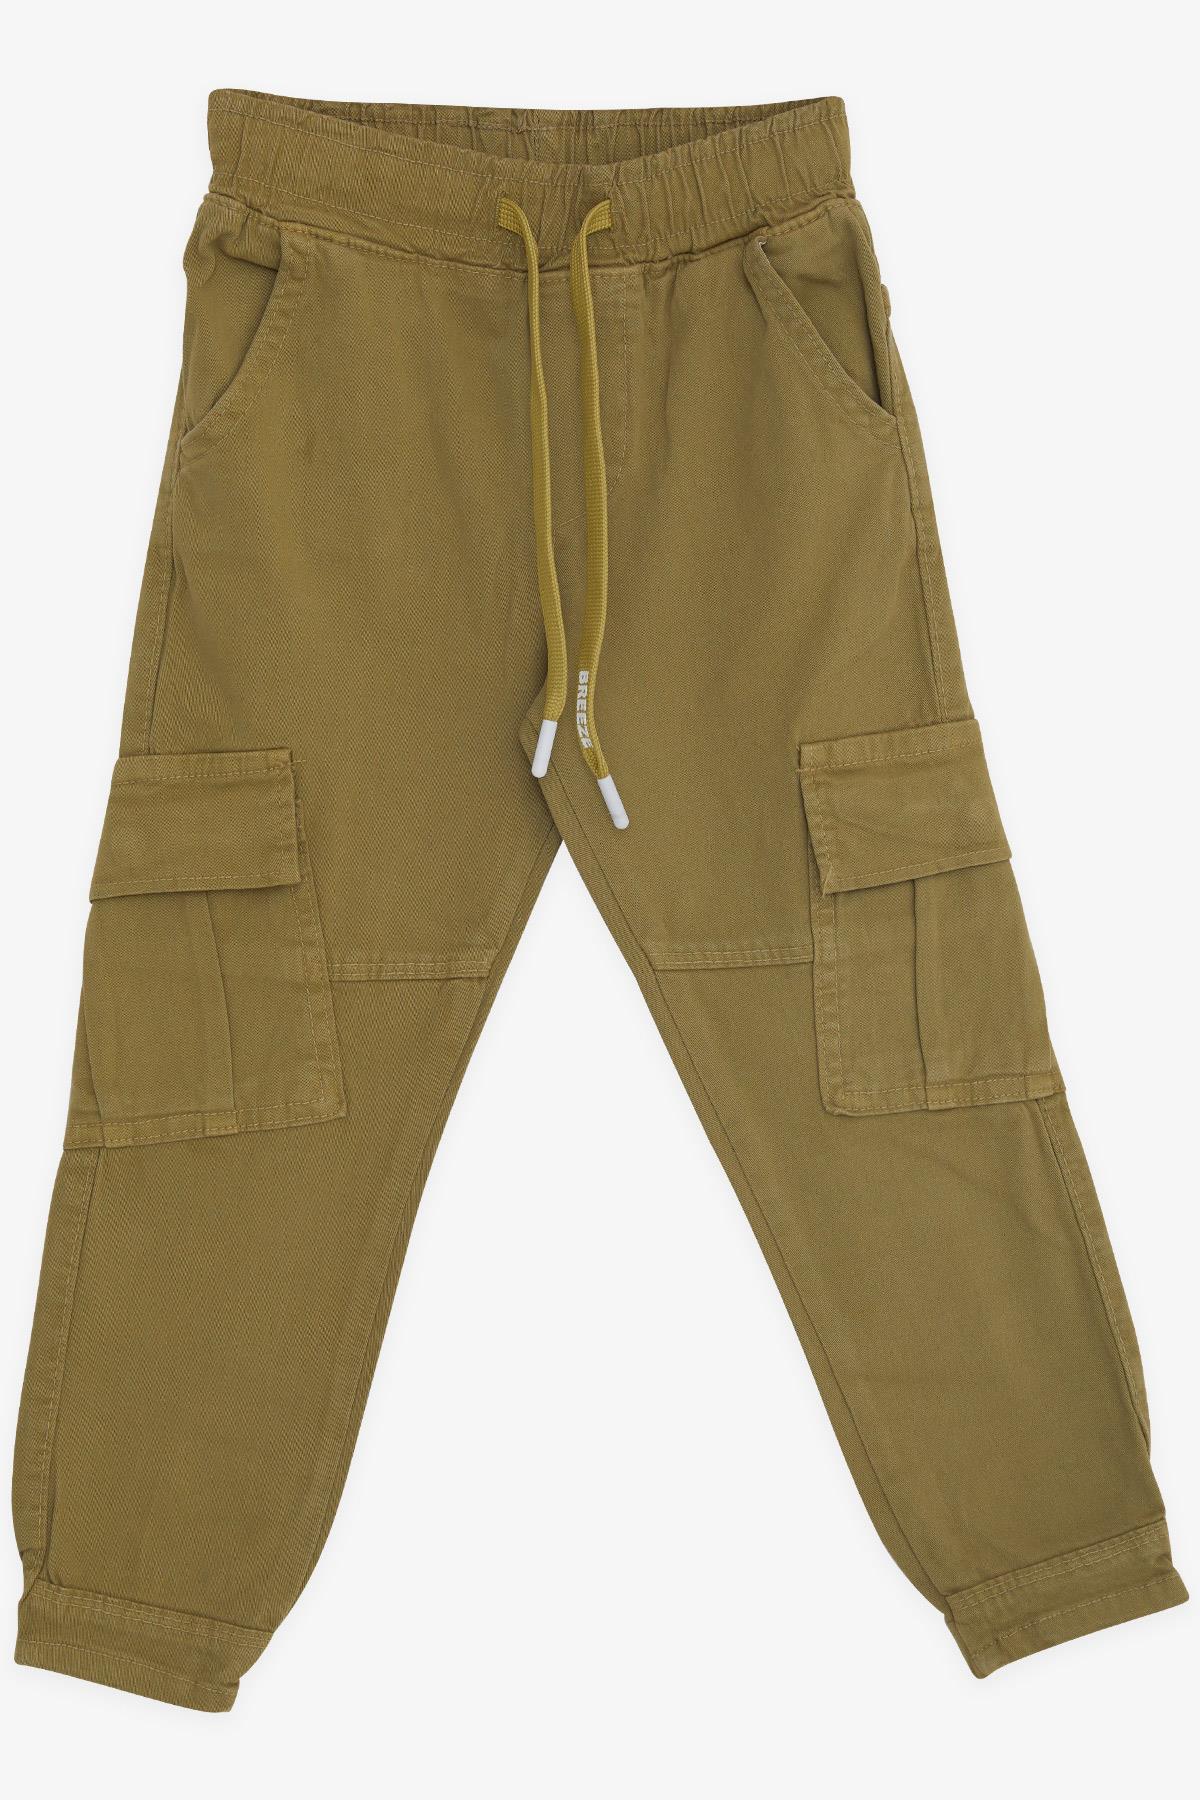 Erkek Çocuk Kot Pantolon Beli Lastikli Cepli Haki Yeşil 3-7 Yaş - Şık Çocuk  Pantolonları | Breeze